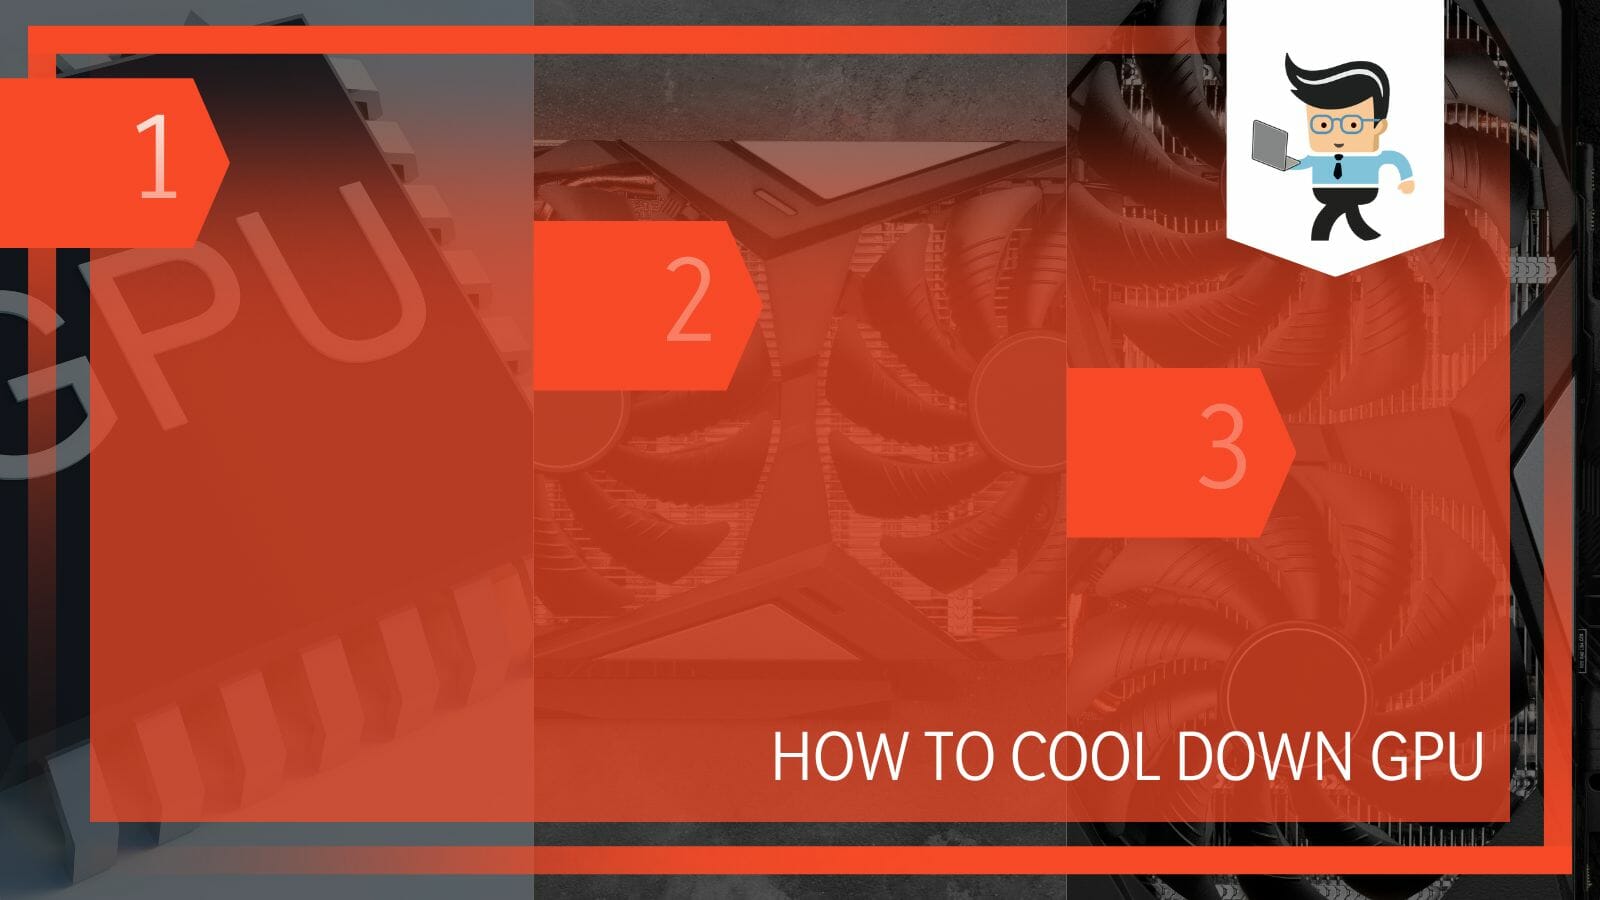 How To Cool Down GPU